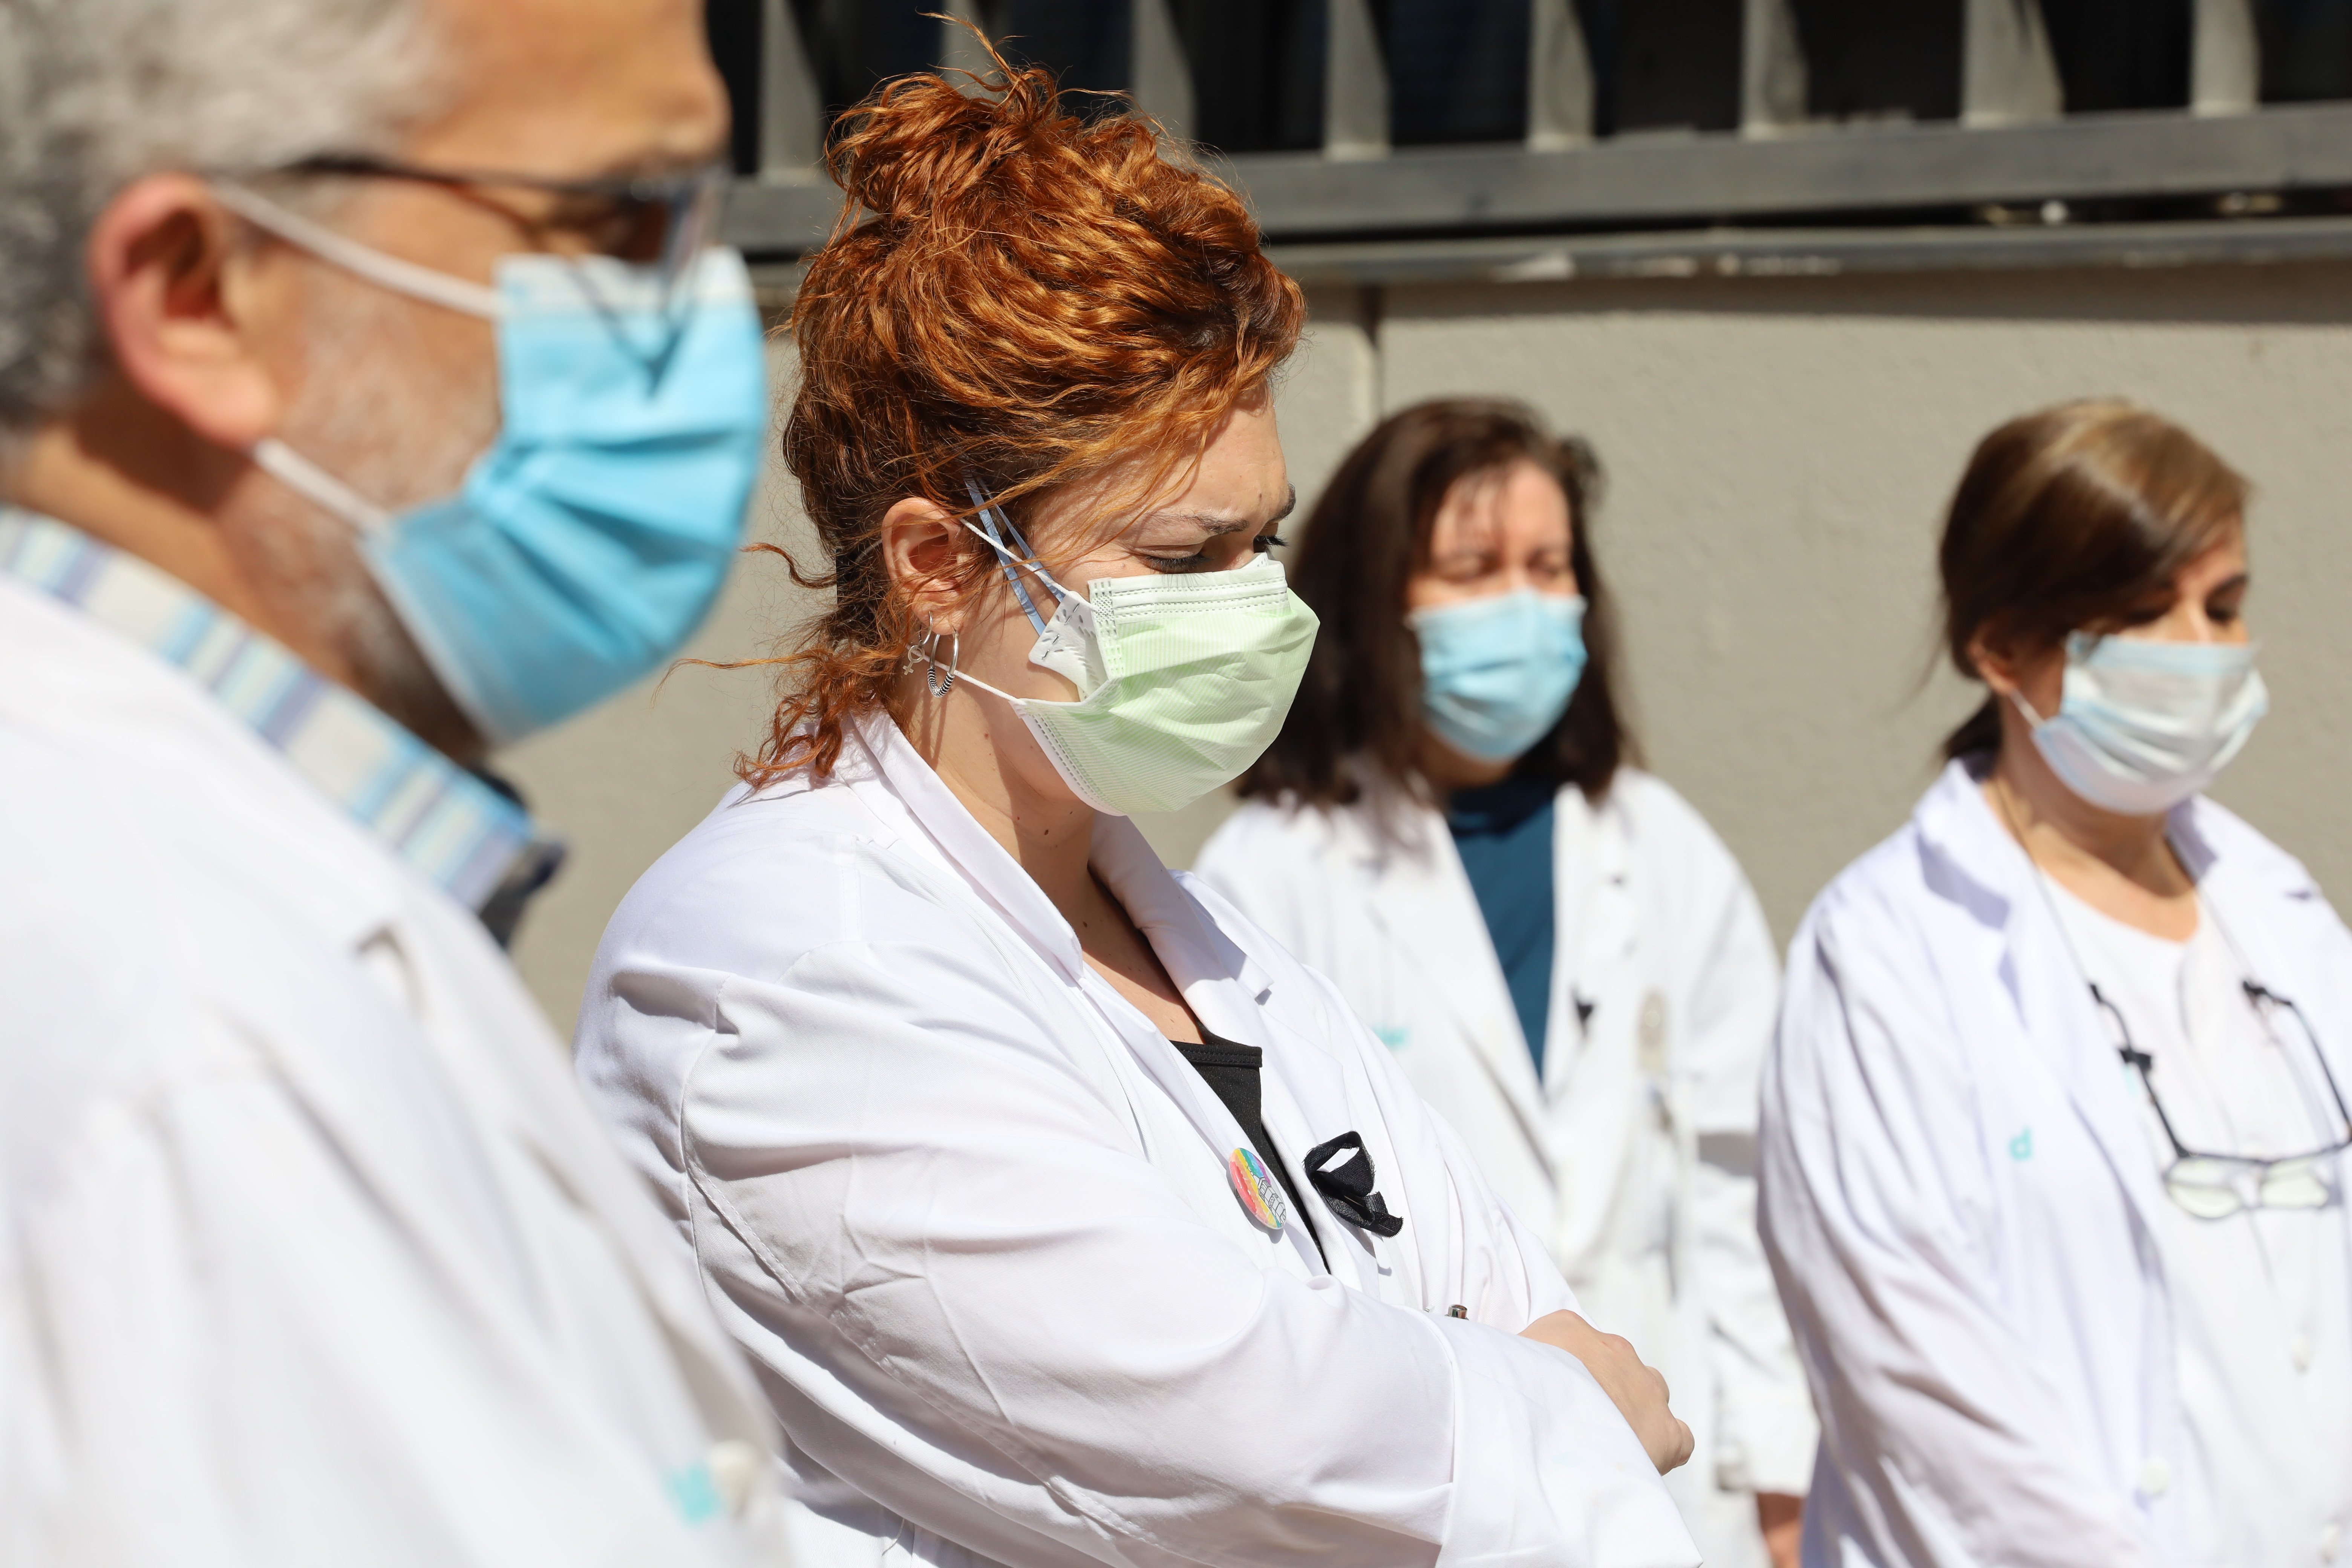 El 52% dels metges internistes han viscut conflictes ètics durant la pandèmia